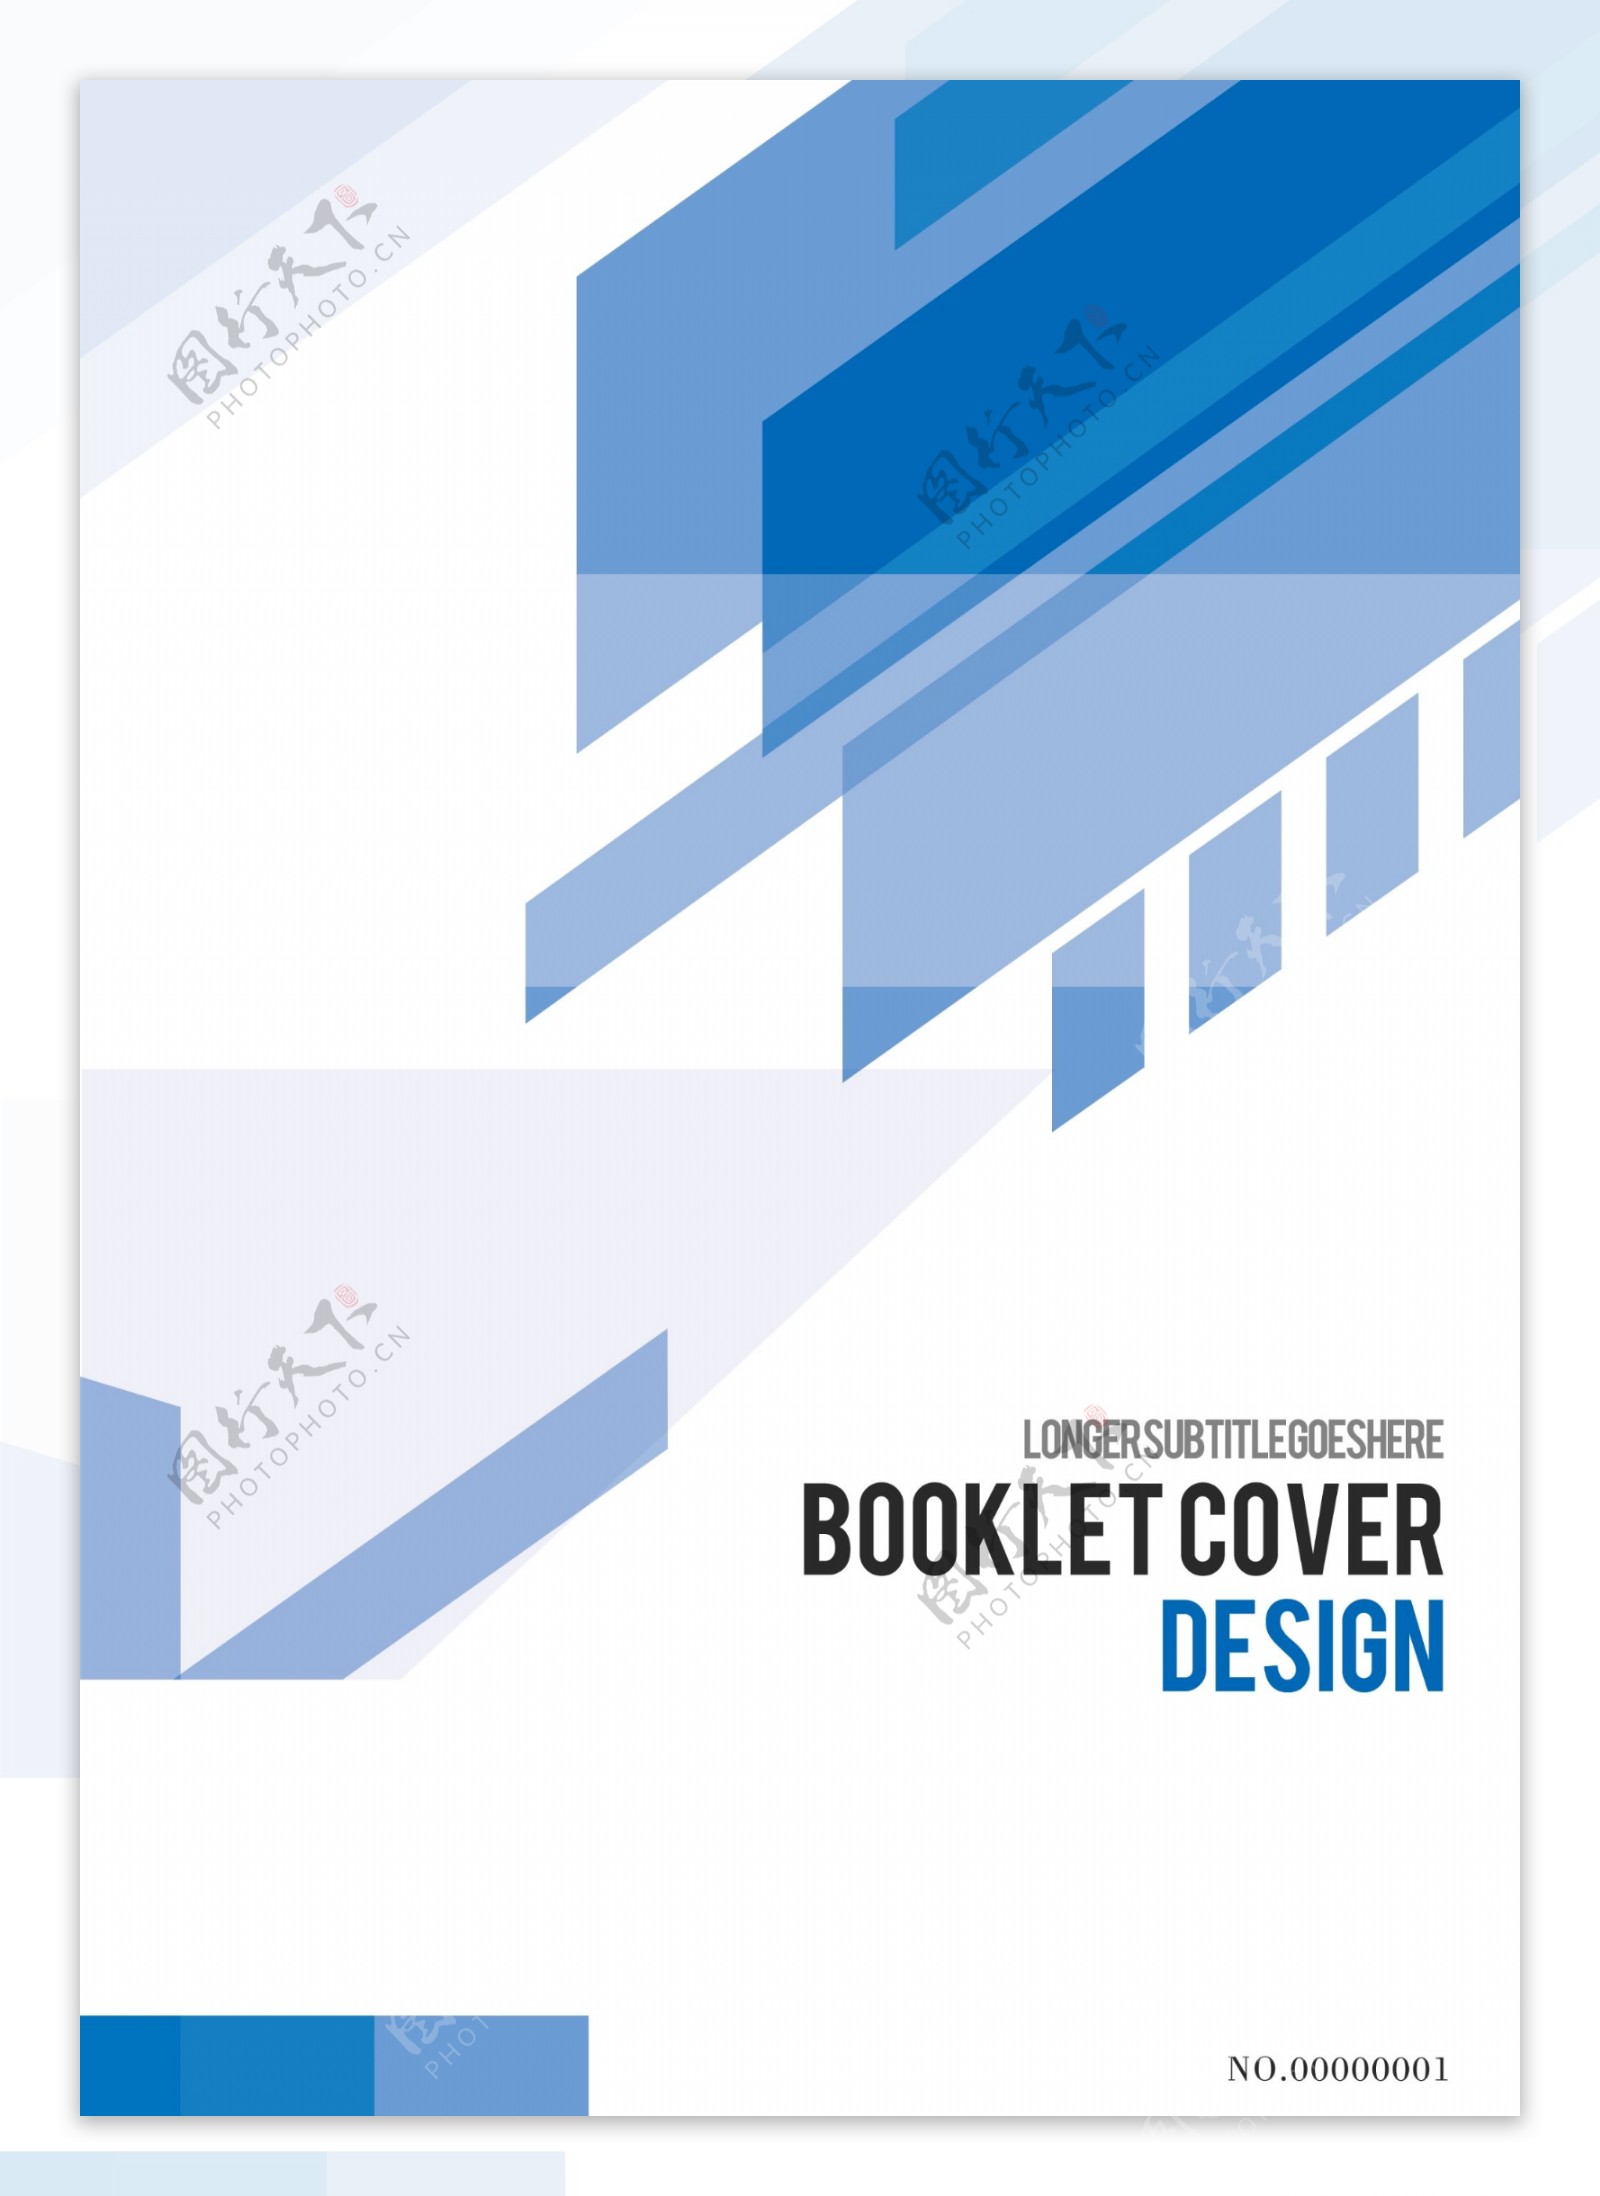 简约大气蓝色几何背景企业宣传画册封面设计